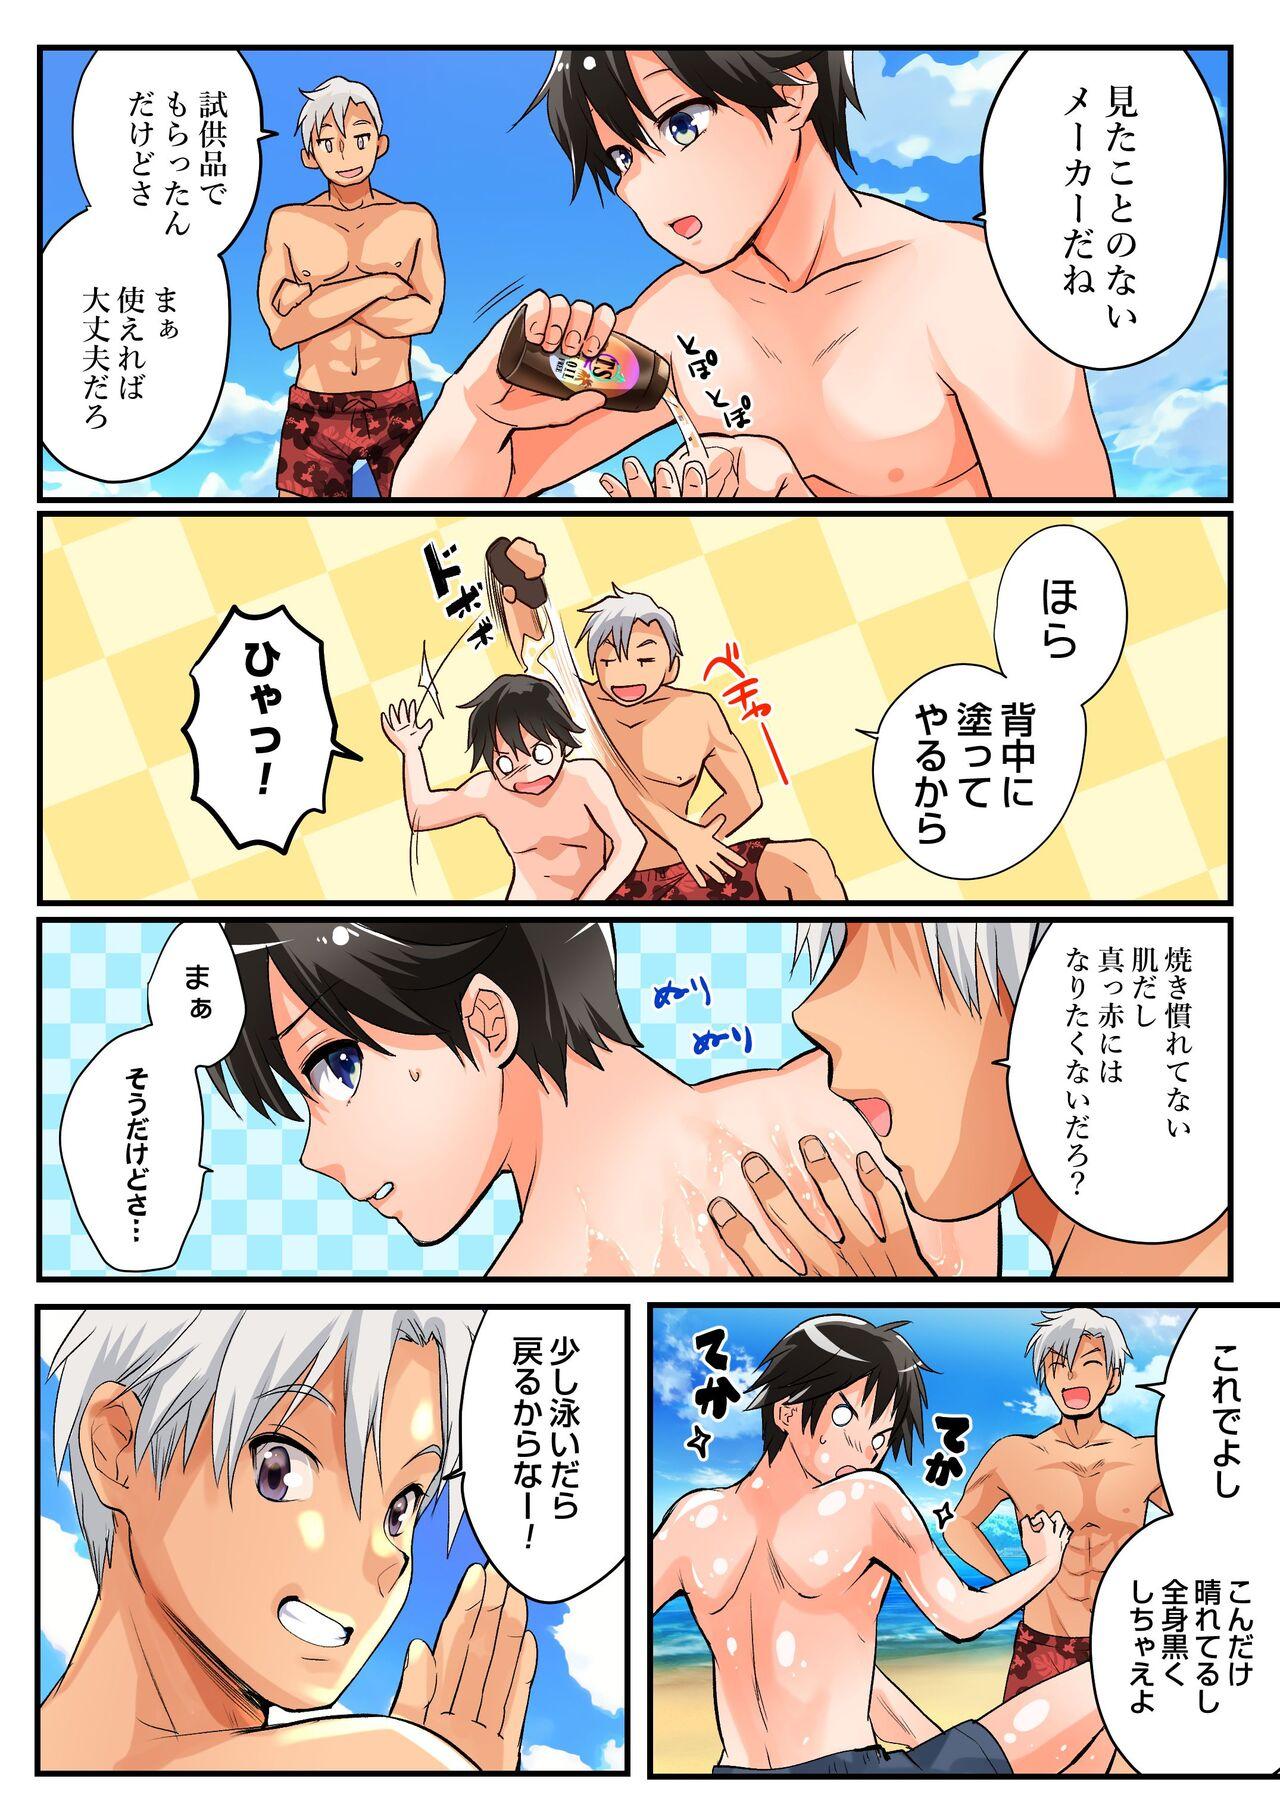 3some TS Gyaru-ka de Sex Beach! - Original Closeups - Page 3